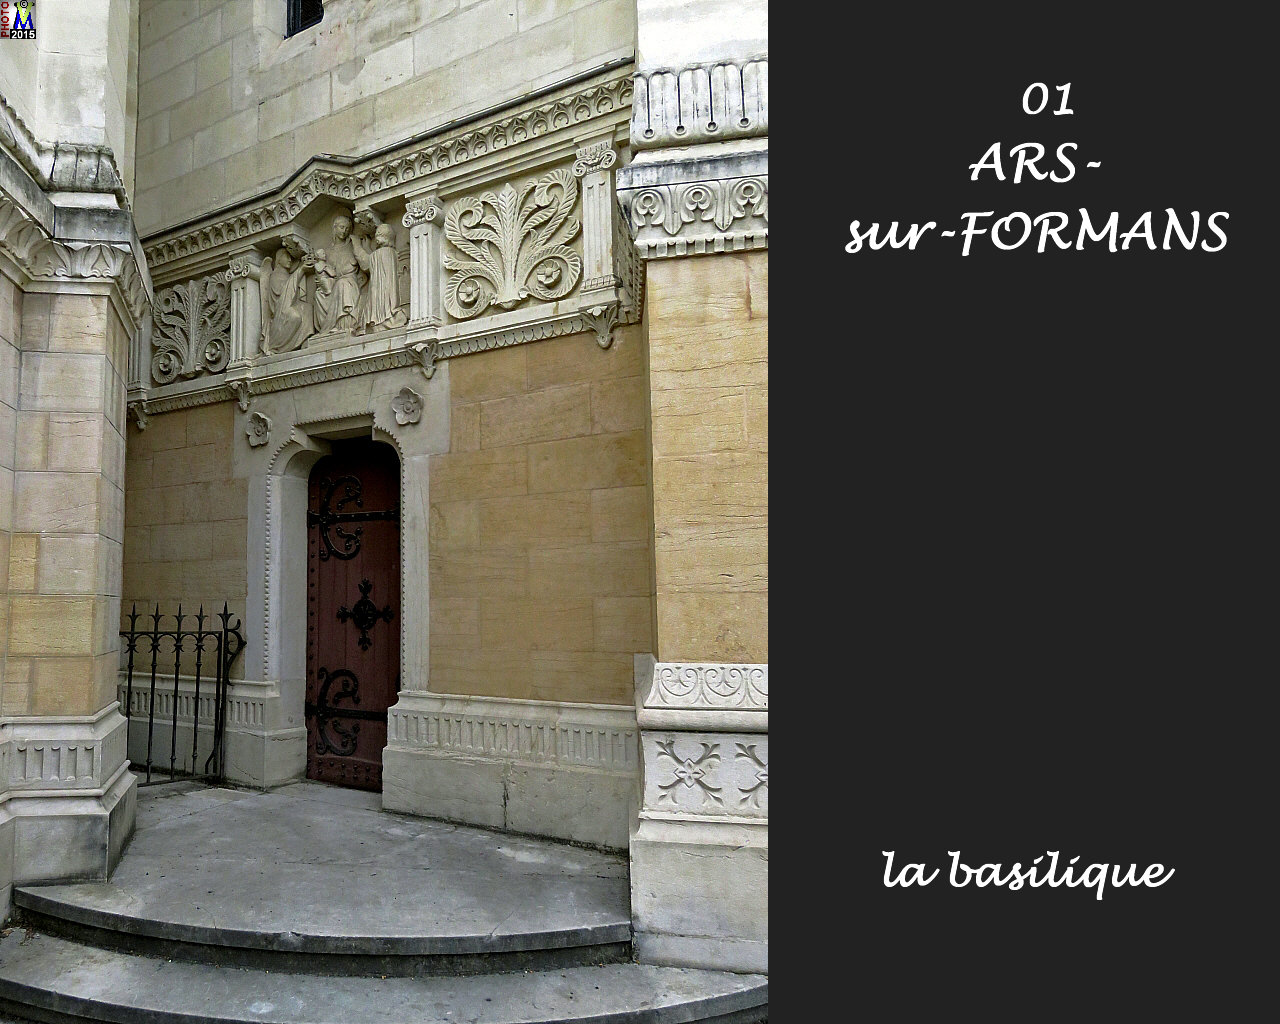 01ARS-FORMANS_basilique_126.jpg